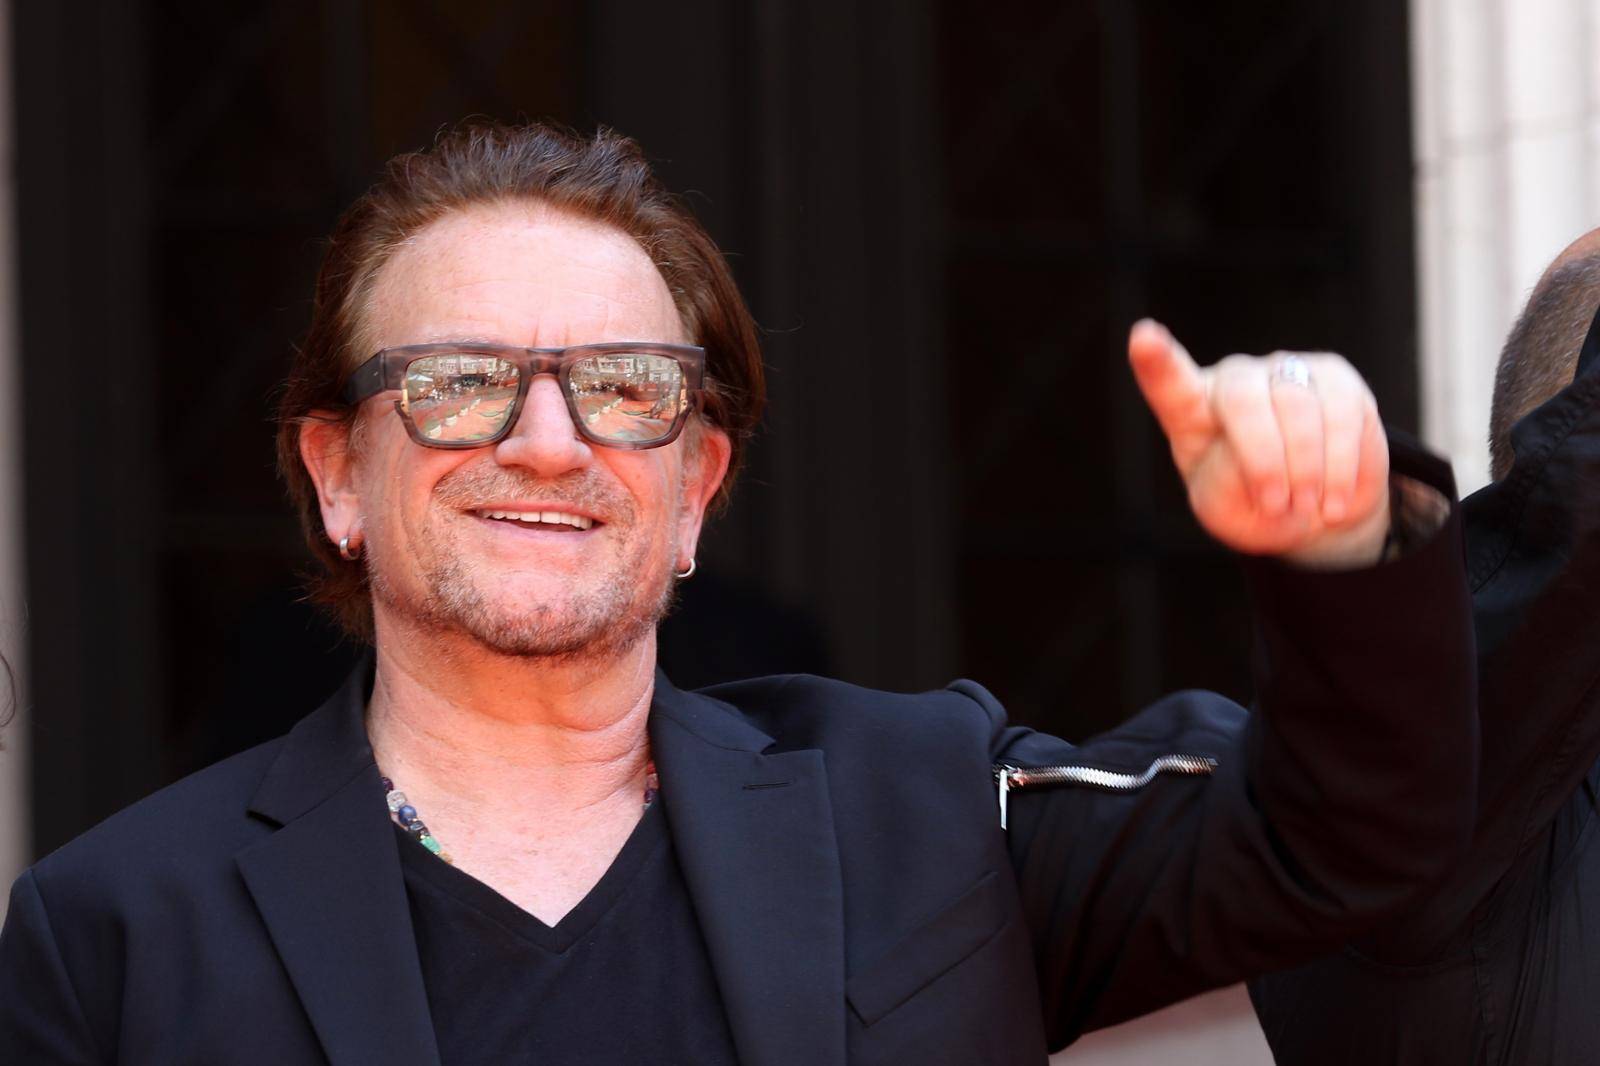 Slavni Bono Vox stigao u Sarajevo, na crvenom tepihu  dočekan uz ovacije